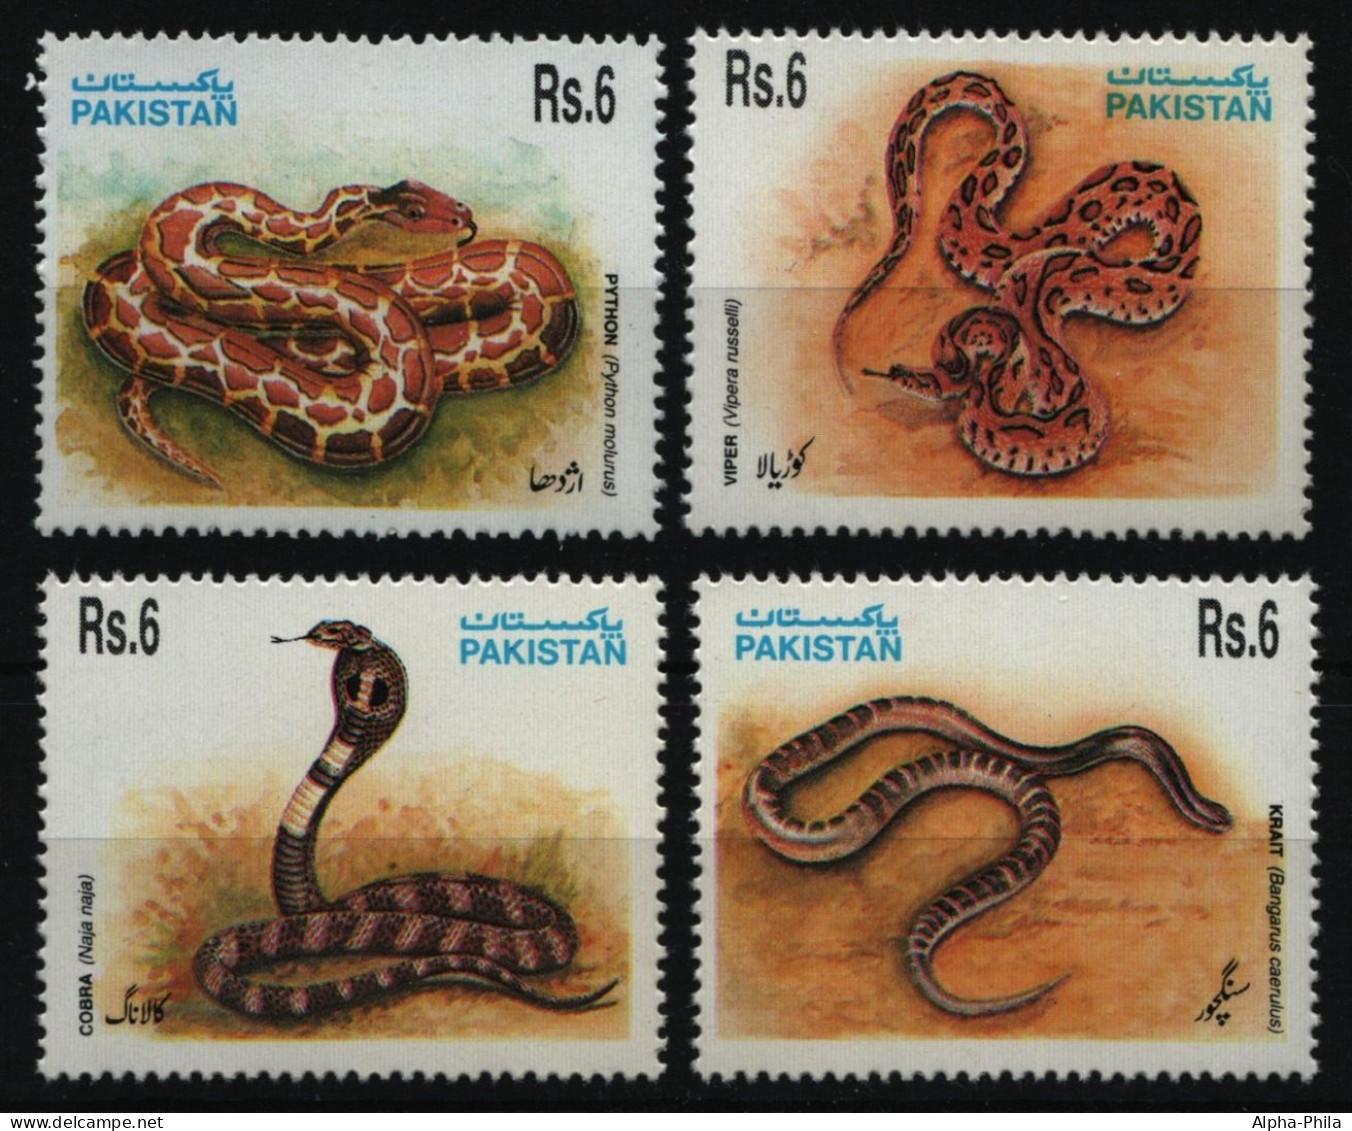 Pakistan 1995 - Mi-Nr. 925-928 ** - MNH - Schlangen / Snakes - Pakistan